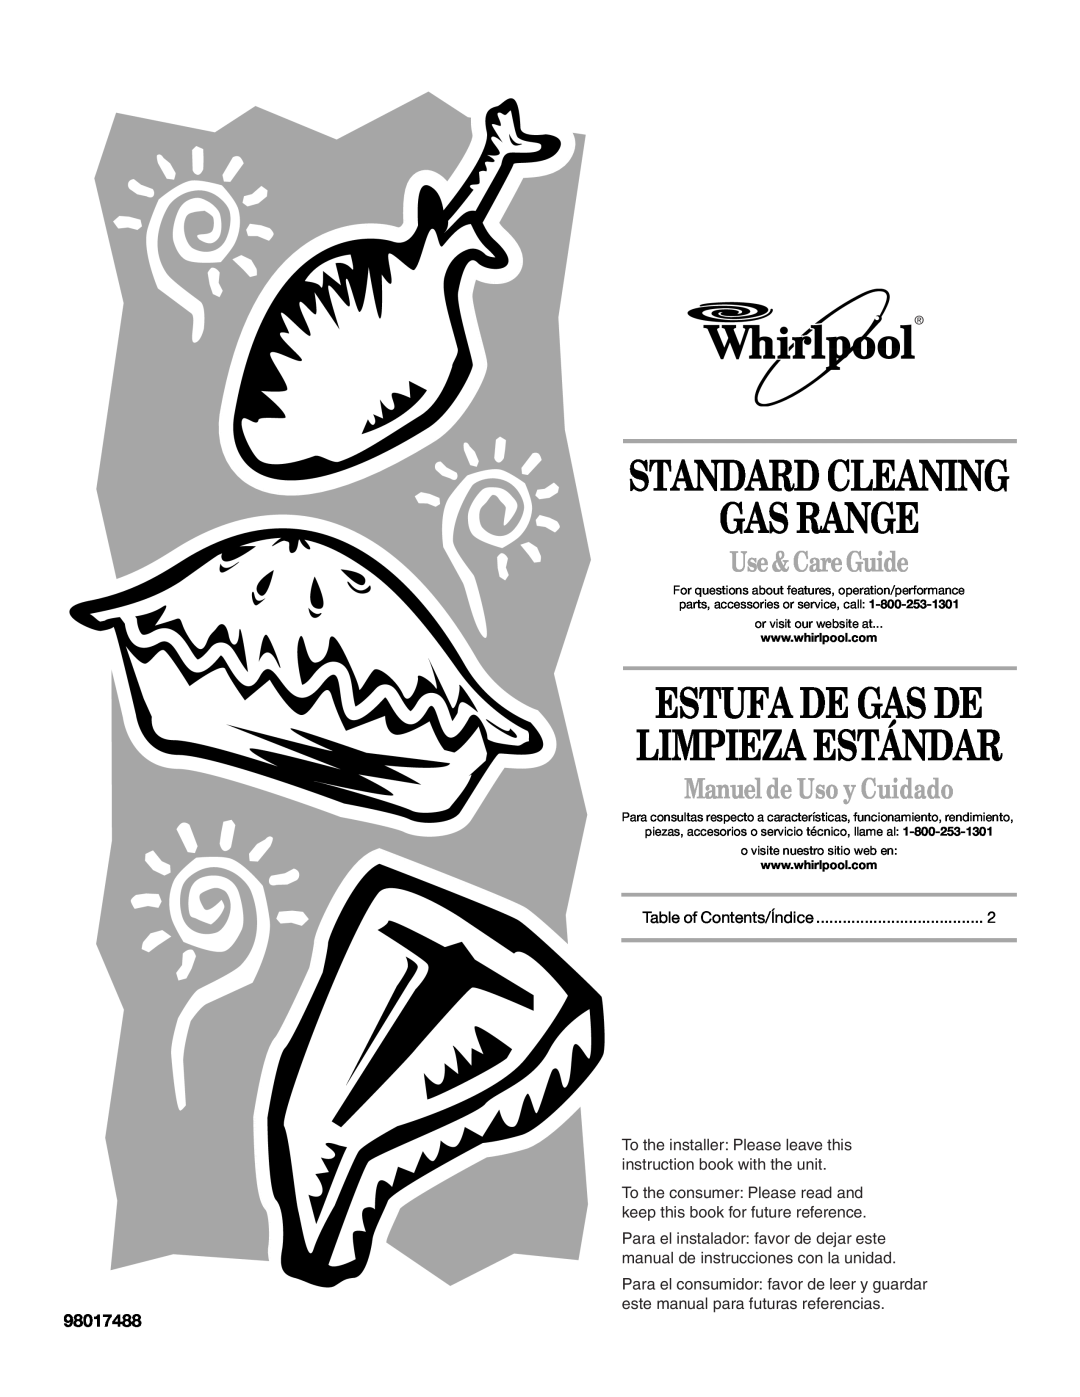 Whirlpool 98017488 manual Gas Range, Estufa De Gas De, Limpieza Estándar, Standard Cleaning, Use & Care Guide 